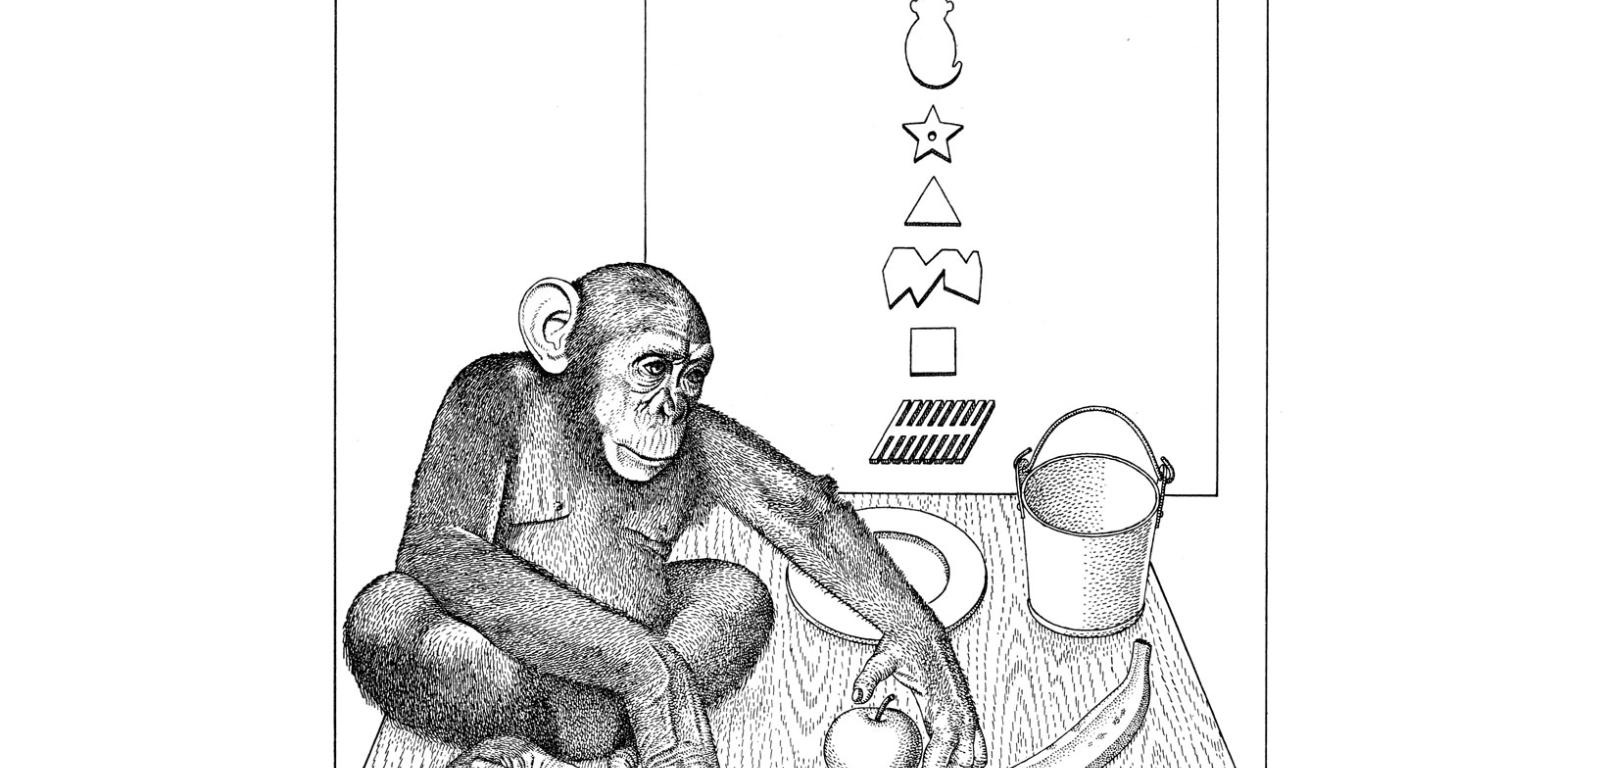 1972, Szympansia inteligencja: „Szympansica Sara po przeczytaniu komunikatu »Sara włóż jabłko wiadro banan półmisek«, wykonała prawidłowo wszystkie czynności. Aby właściwie zinterpretować polecenie i włożyć jabłko do wiadra, a banan położyć na półmisek (nie umieścić jabłko, wiadro i banan na półmisku), musiała dobrze odczytać sens całego zdania, a nie tylko kolejność słów”.